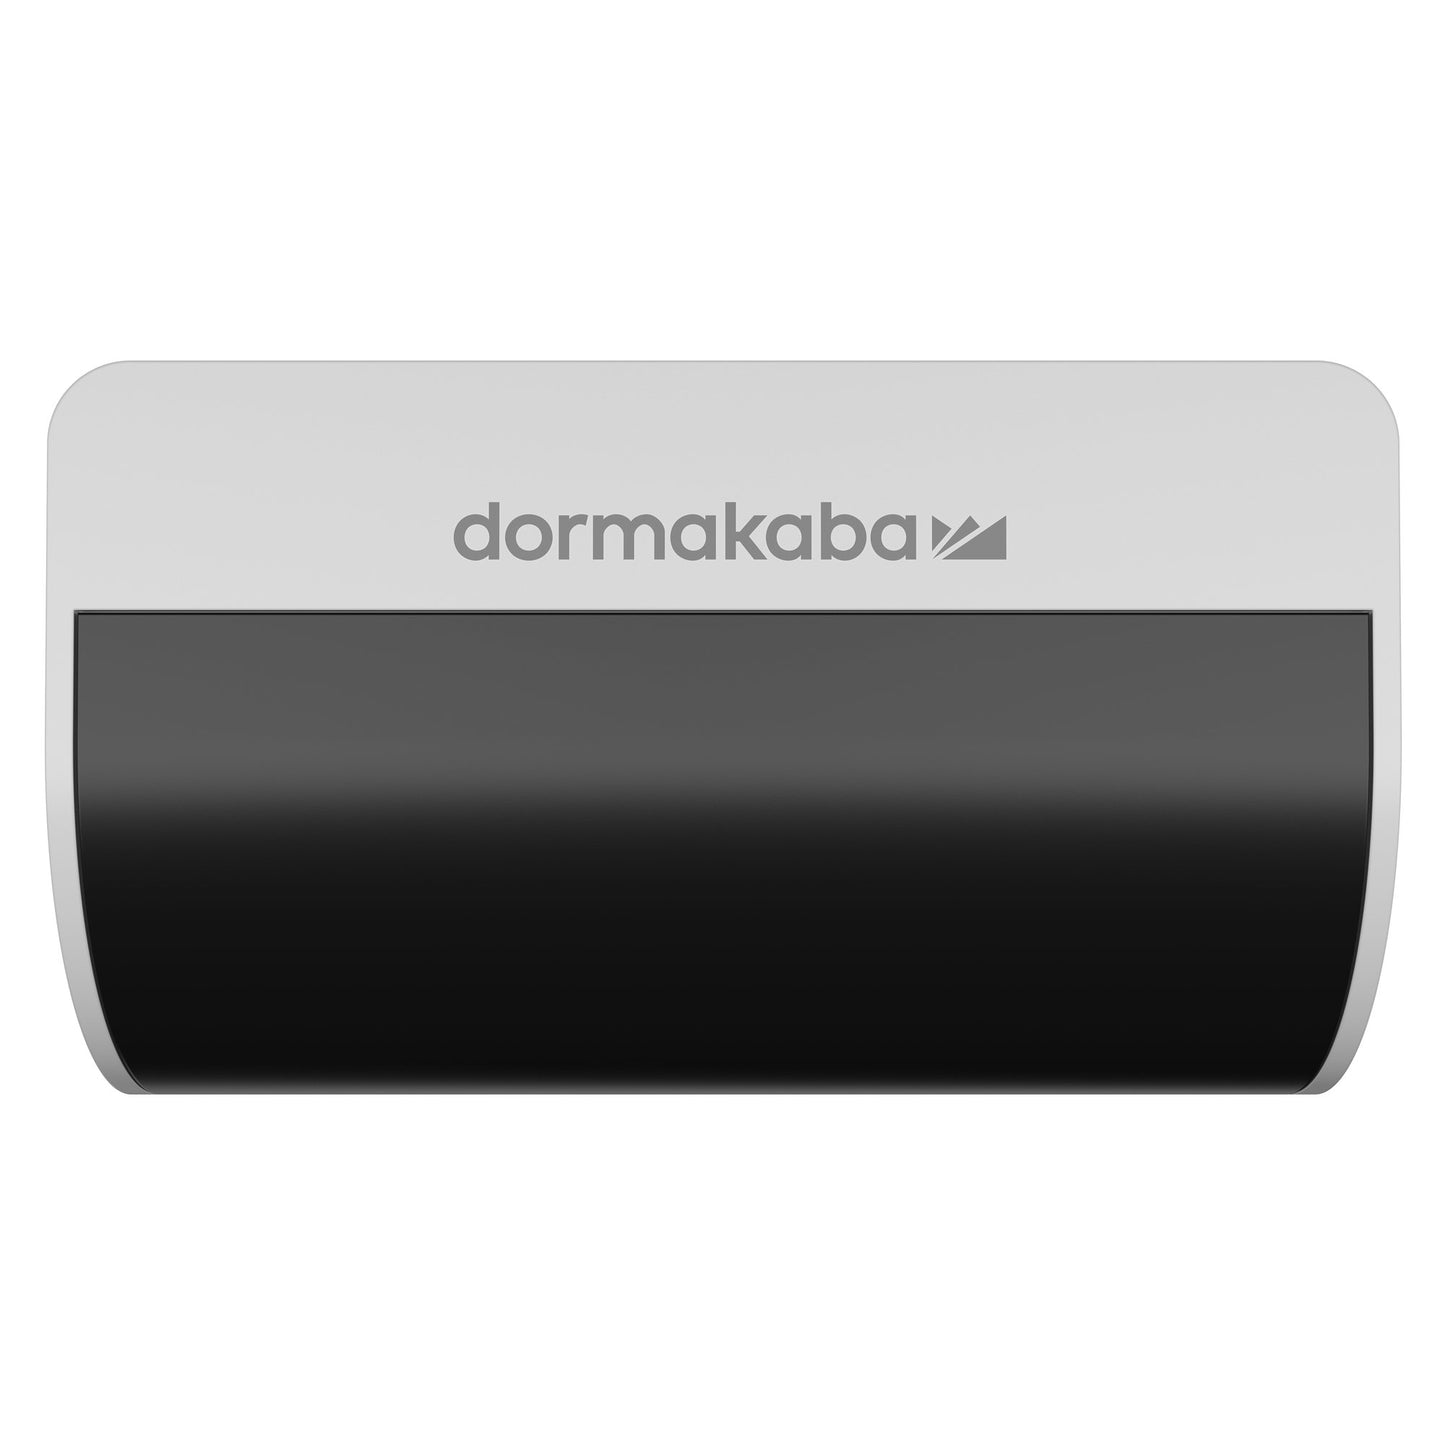 86891900 dormakaba MotionIQ Sensor